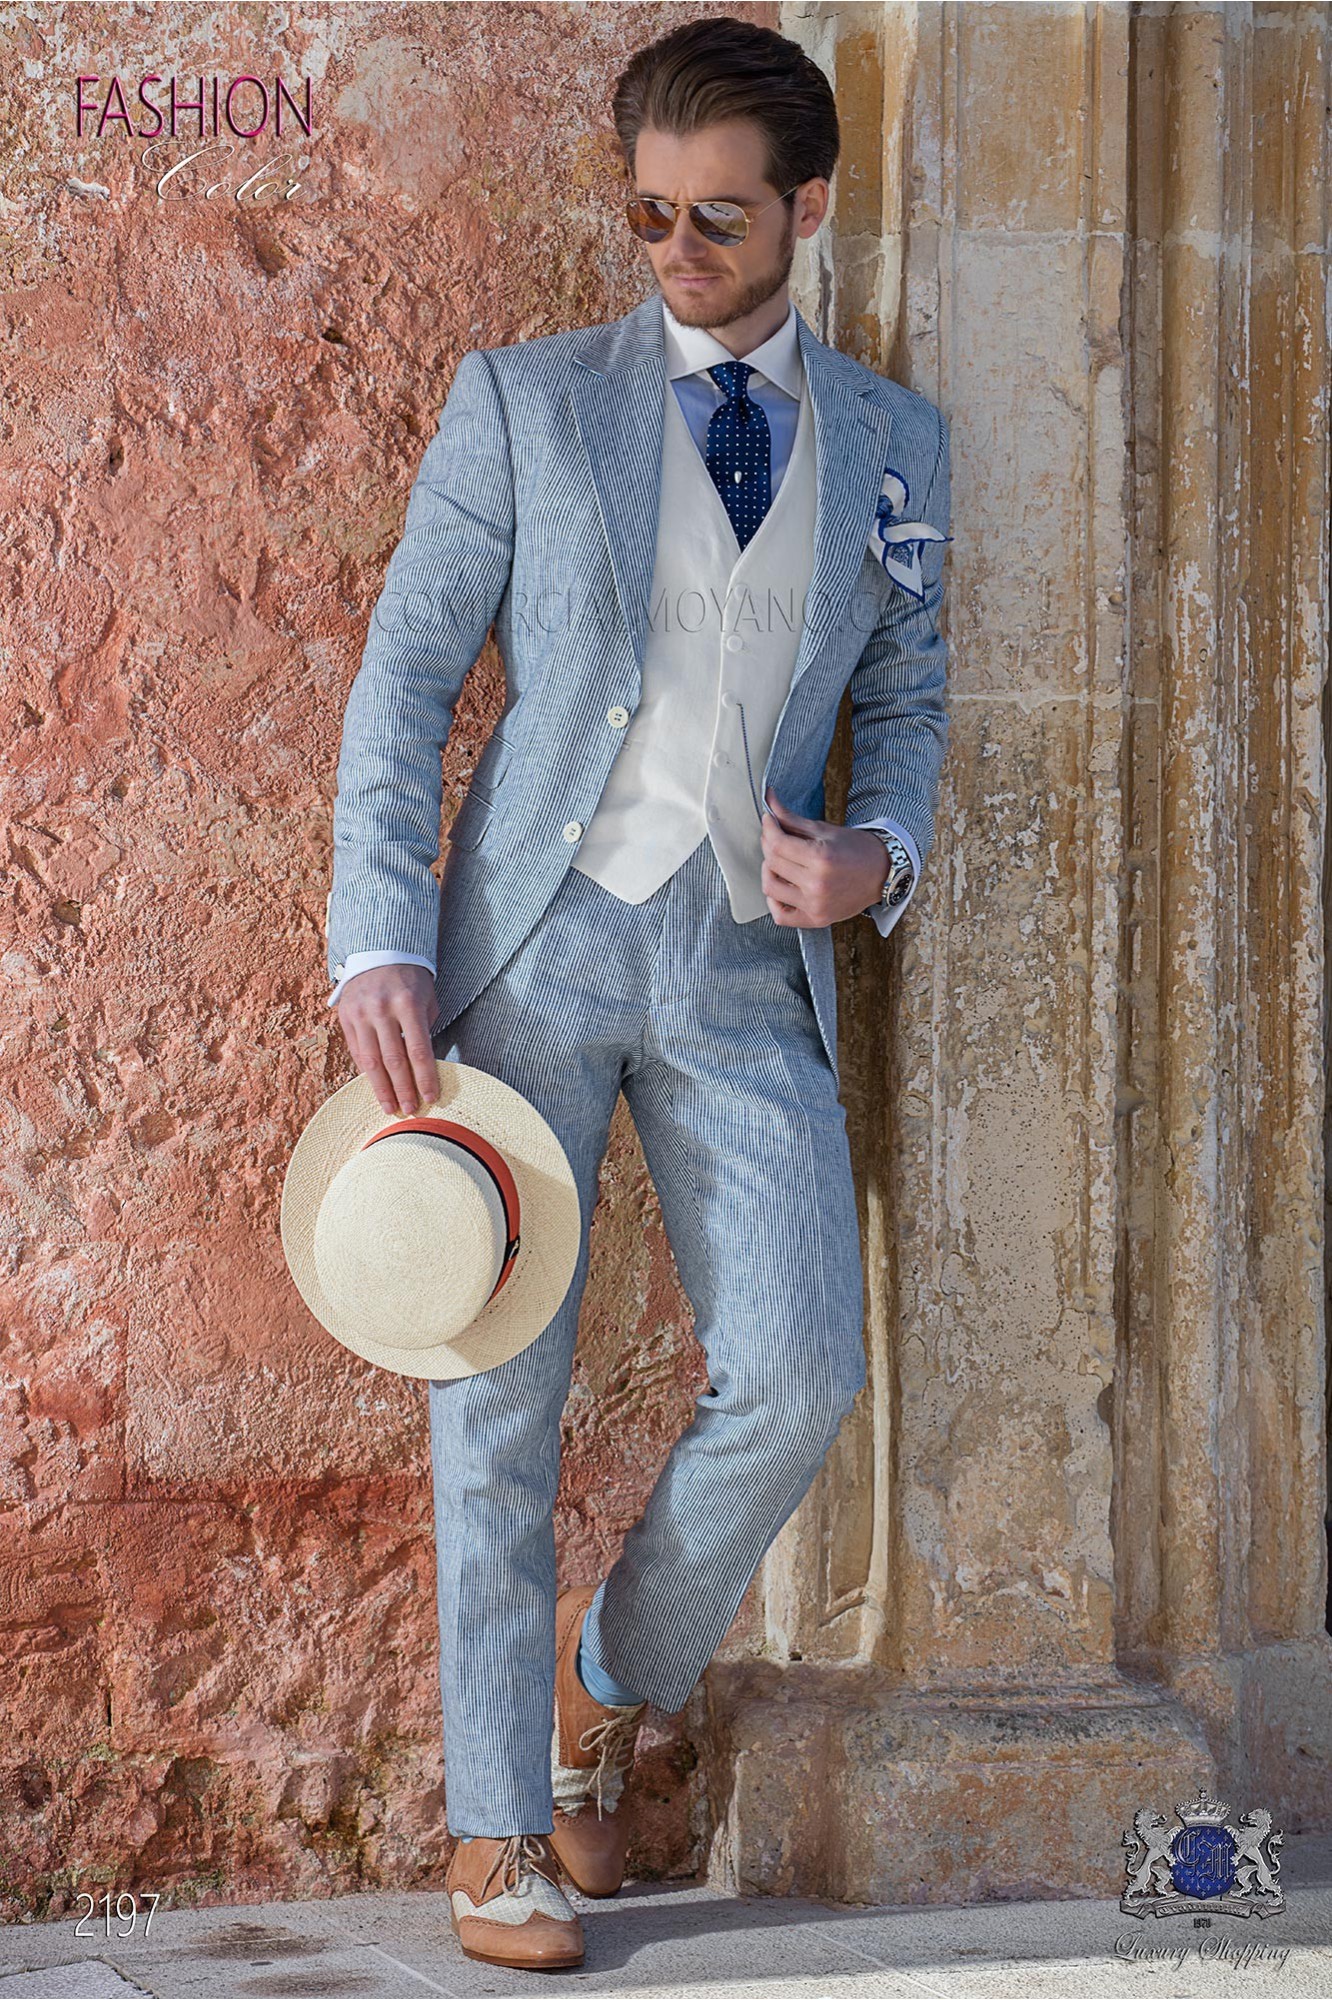 Traje de novio de lino azul con raya blanca modelo: 2197 Mario Moyano colección Hipster